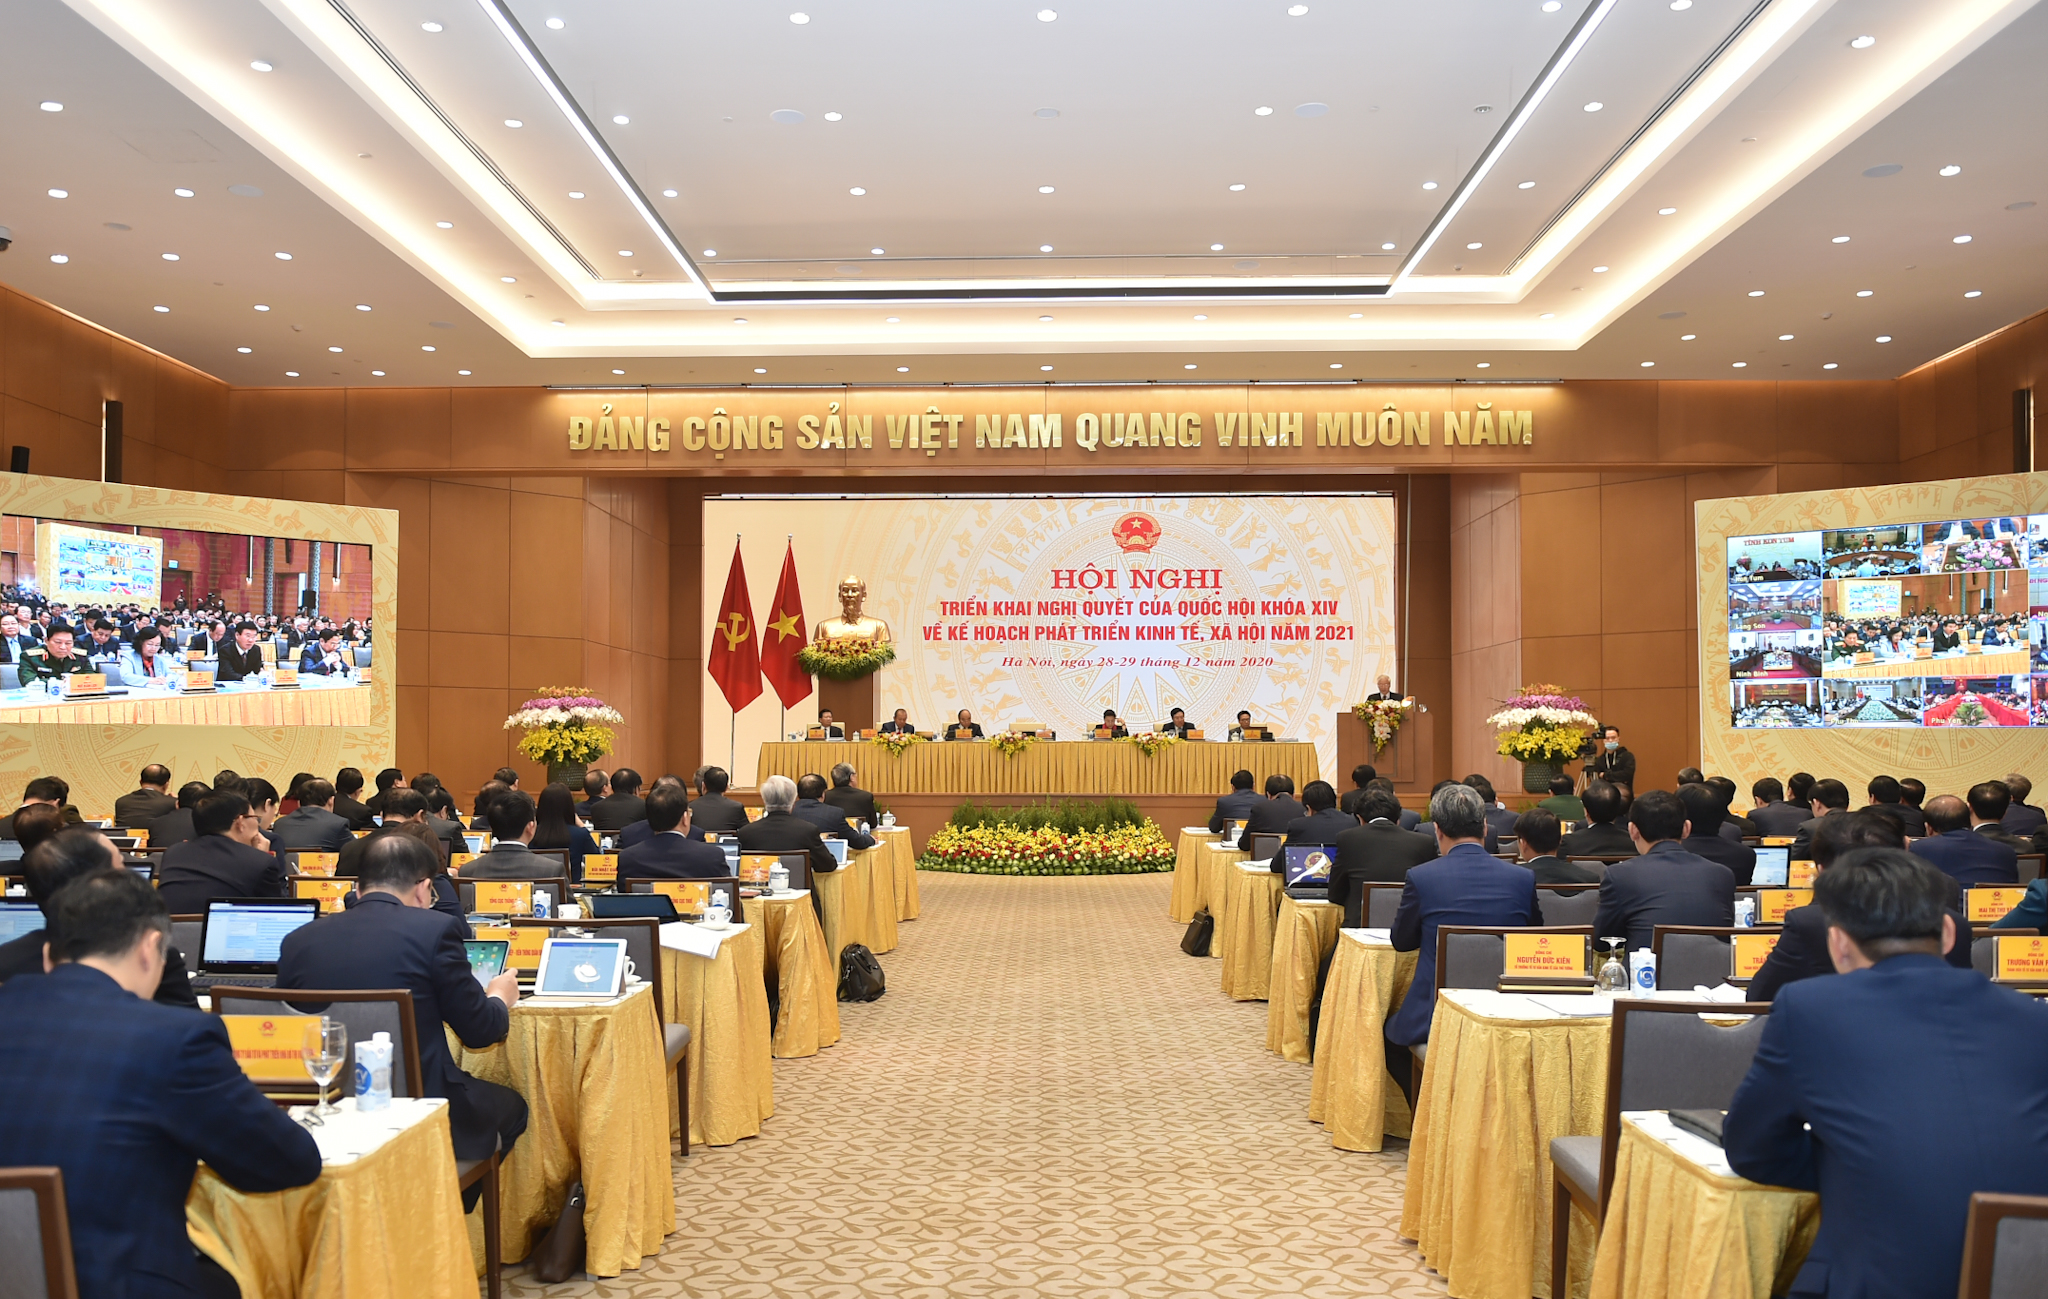 Tổng Bí thư, Chủ tịch nước Nguyễn Phú Trọng: Năm 2020 thành công nhất trong 5 năm vừa qua